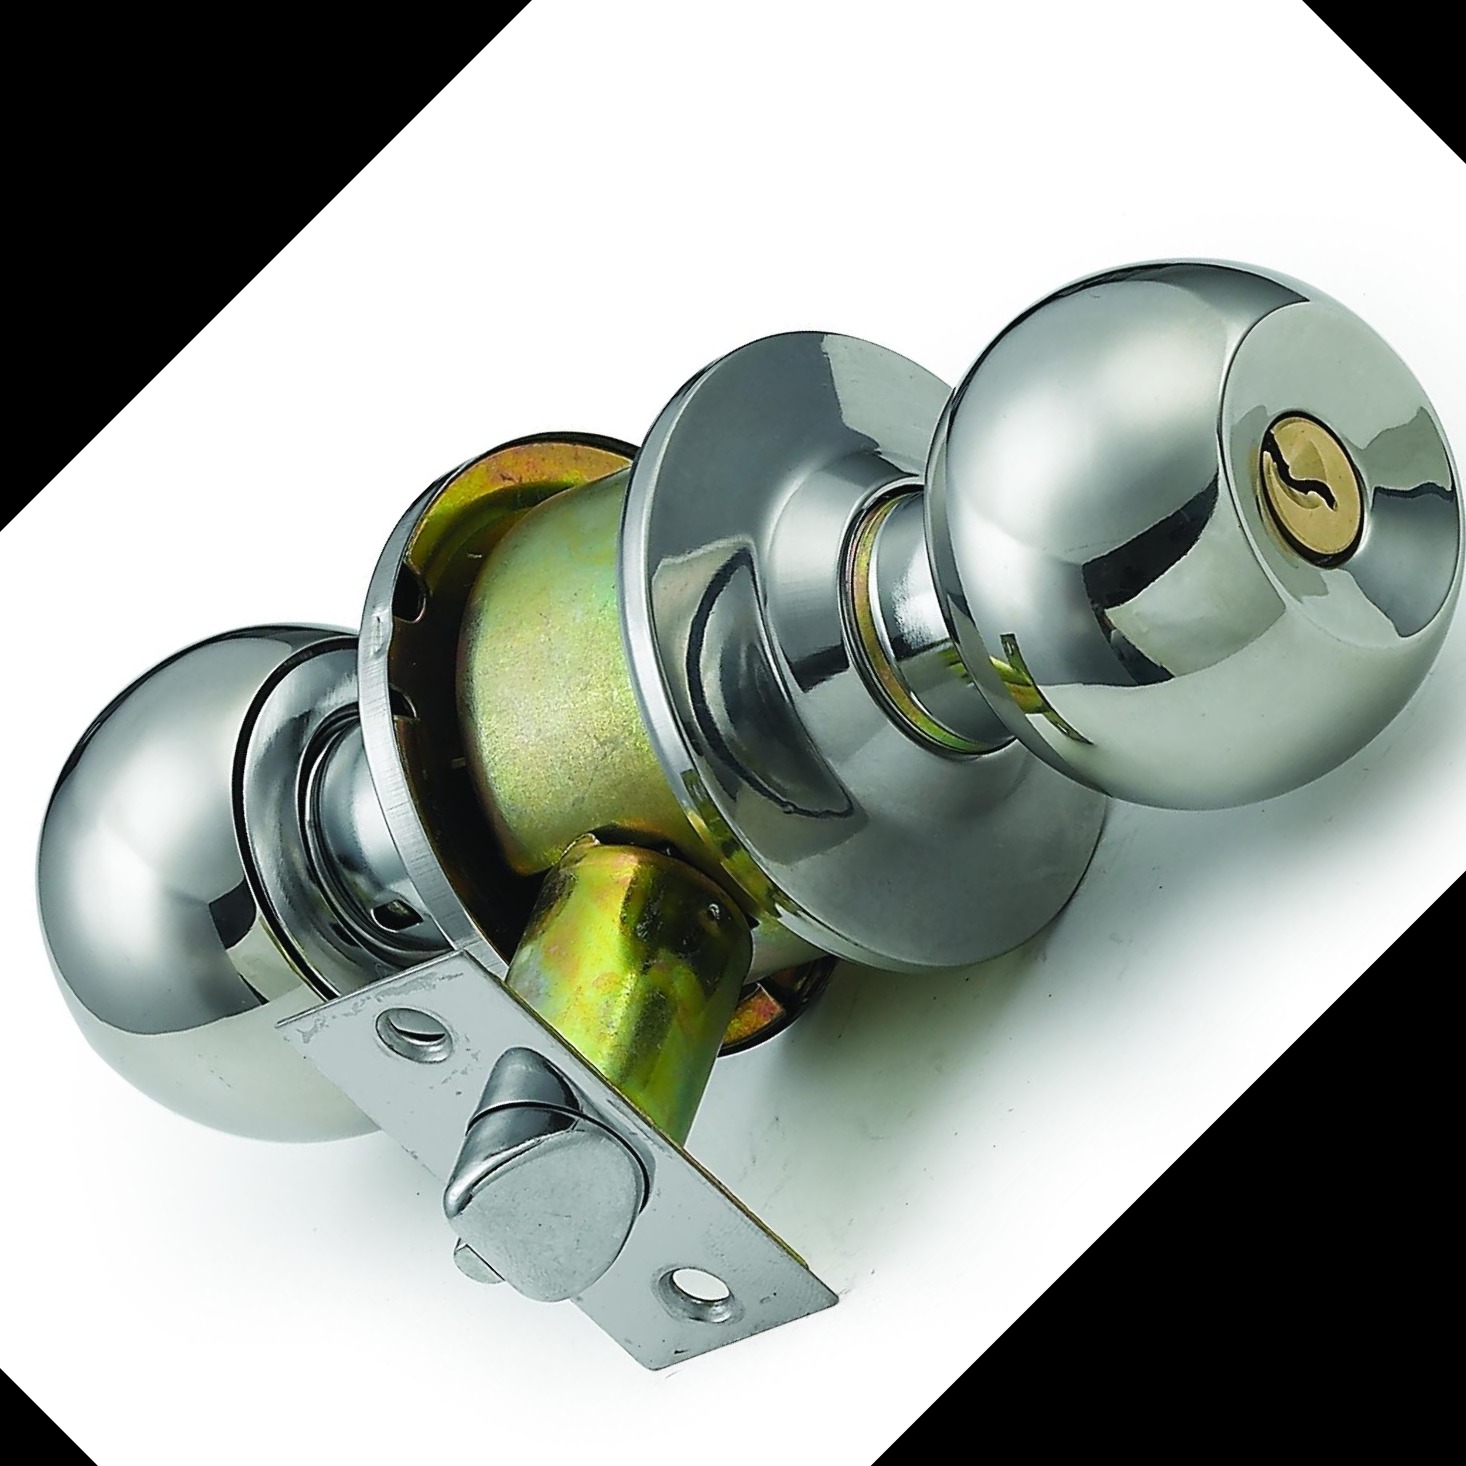 厂家直销587球型锁 不锈钢门锁  机械门锁 五金锁具